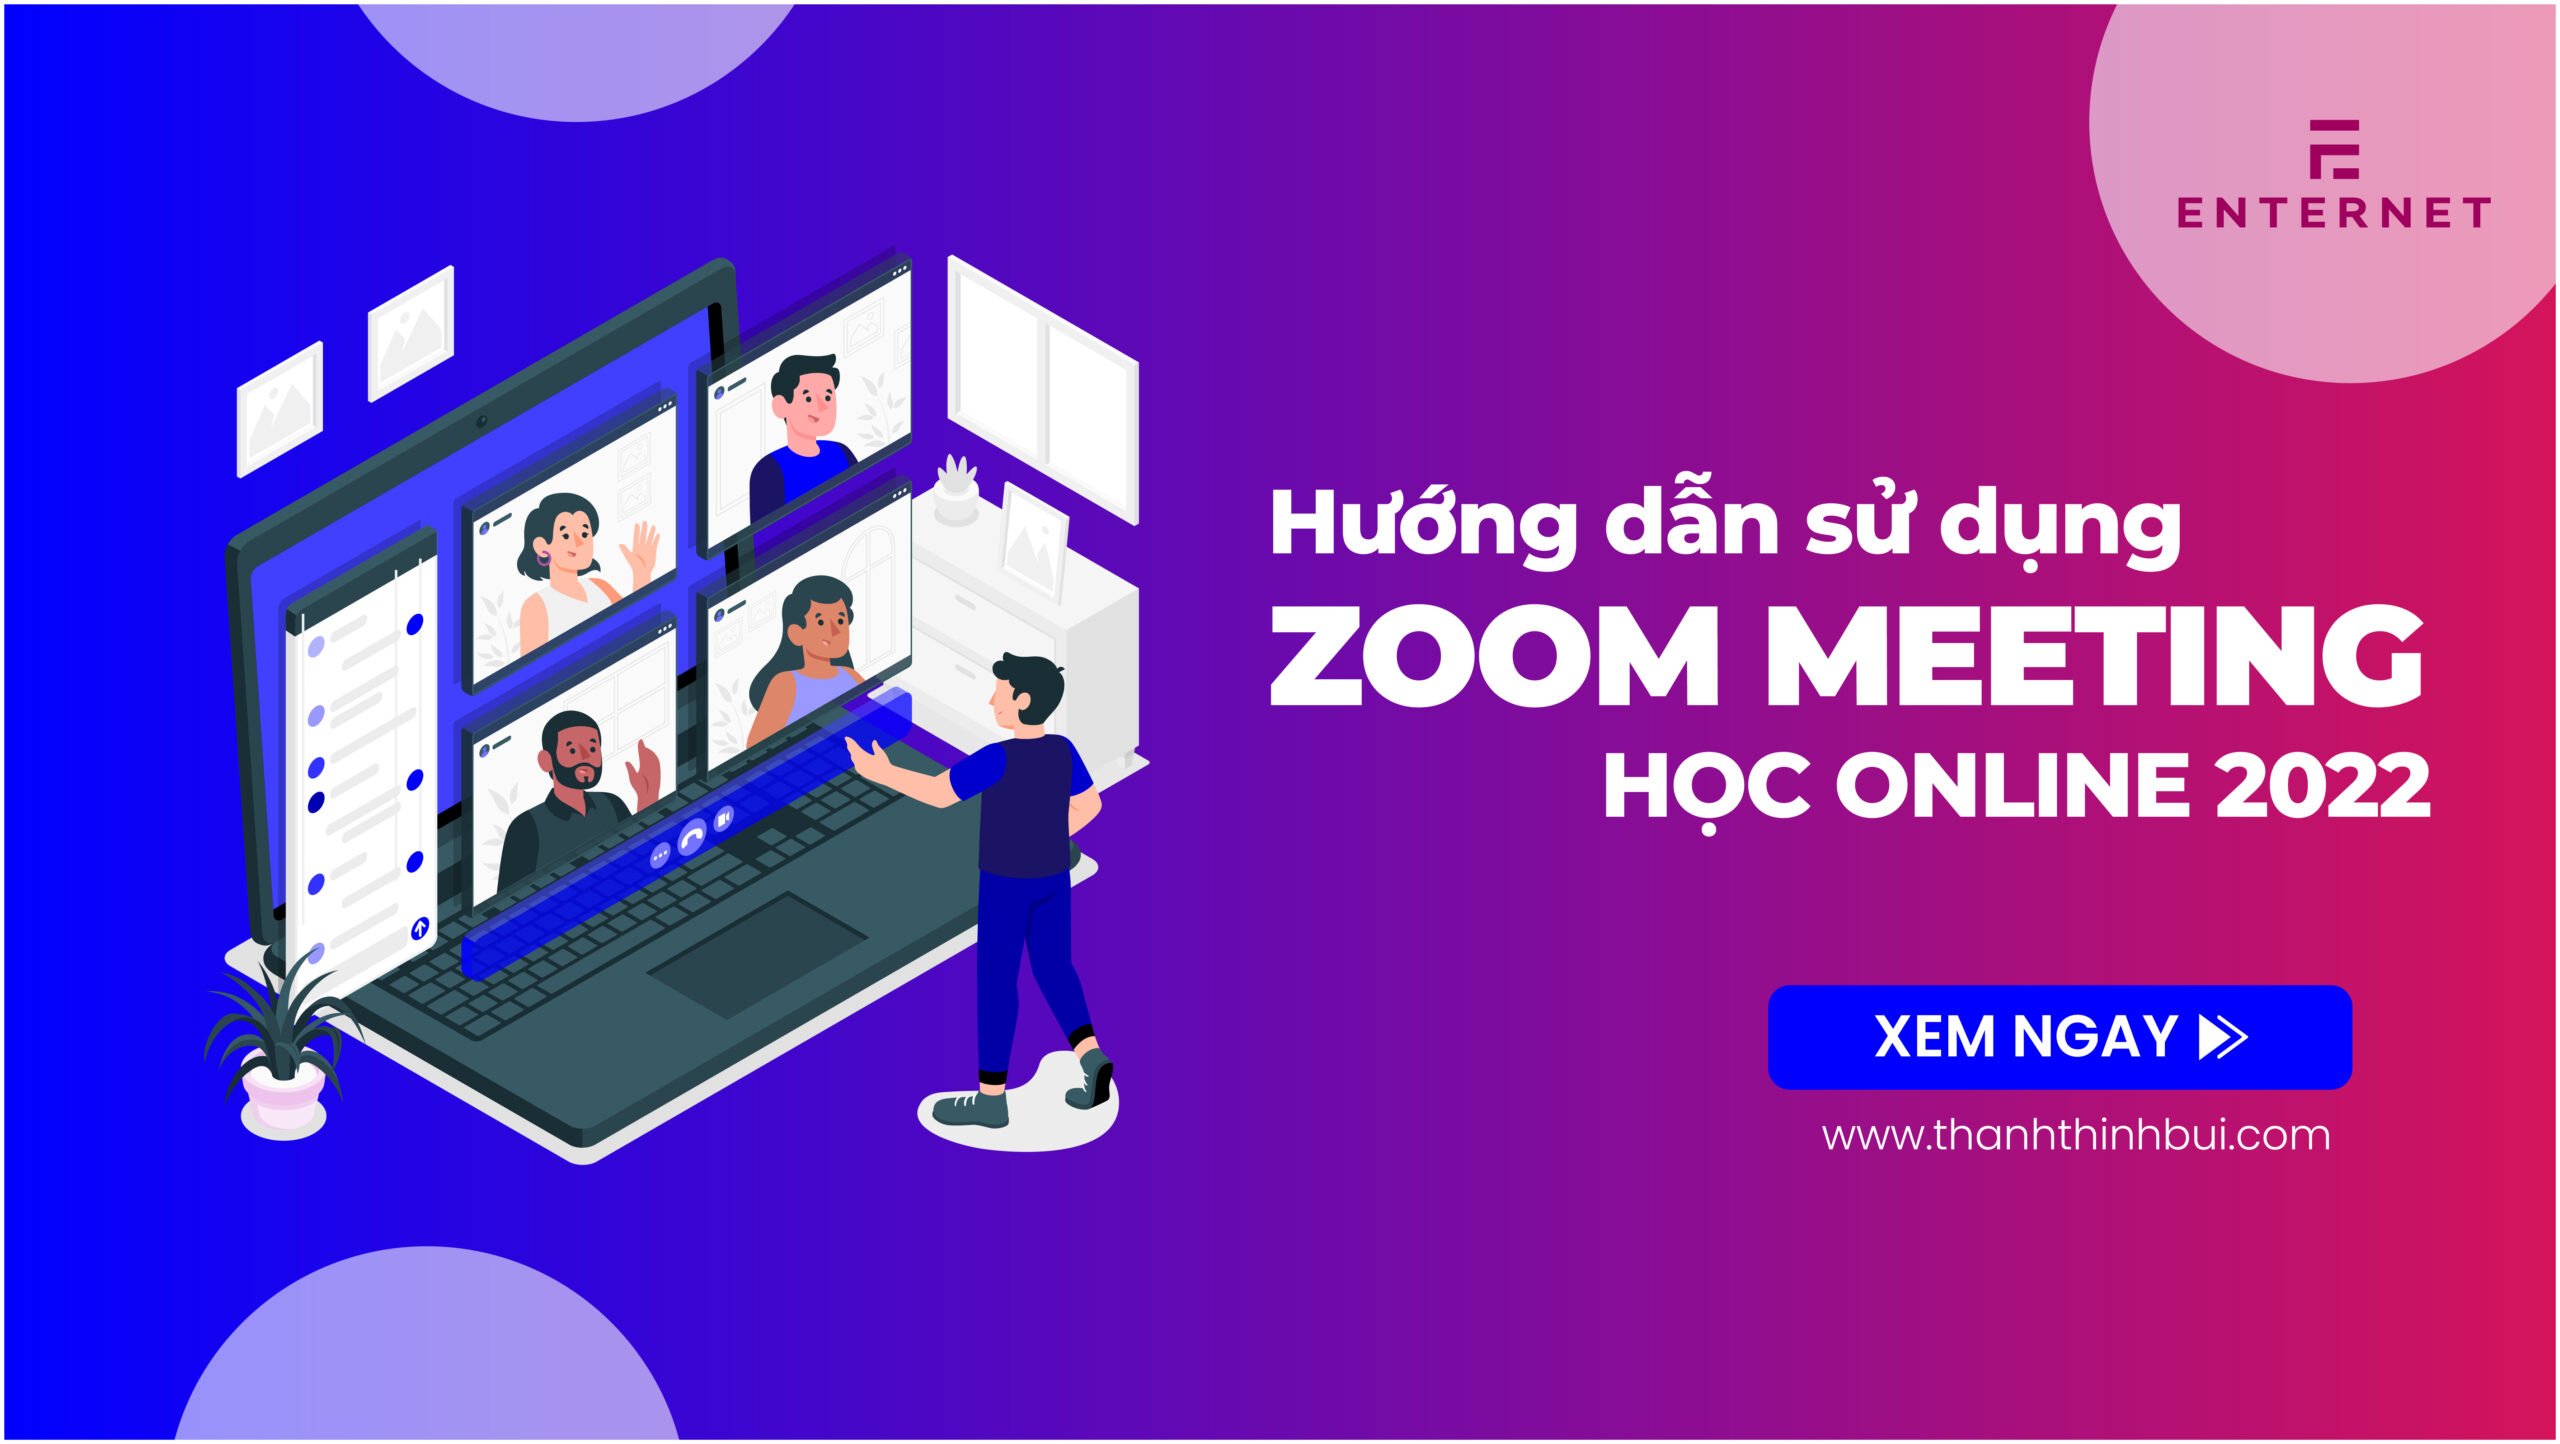 Hướng dẫn cách sử dụng Zoom Meeting học online 2022